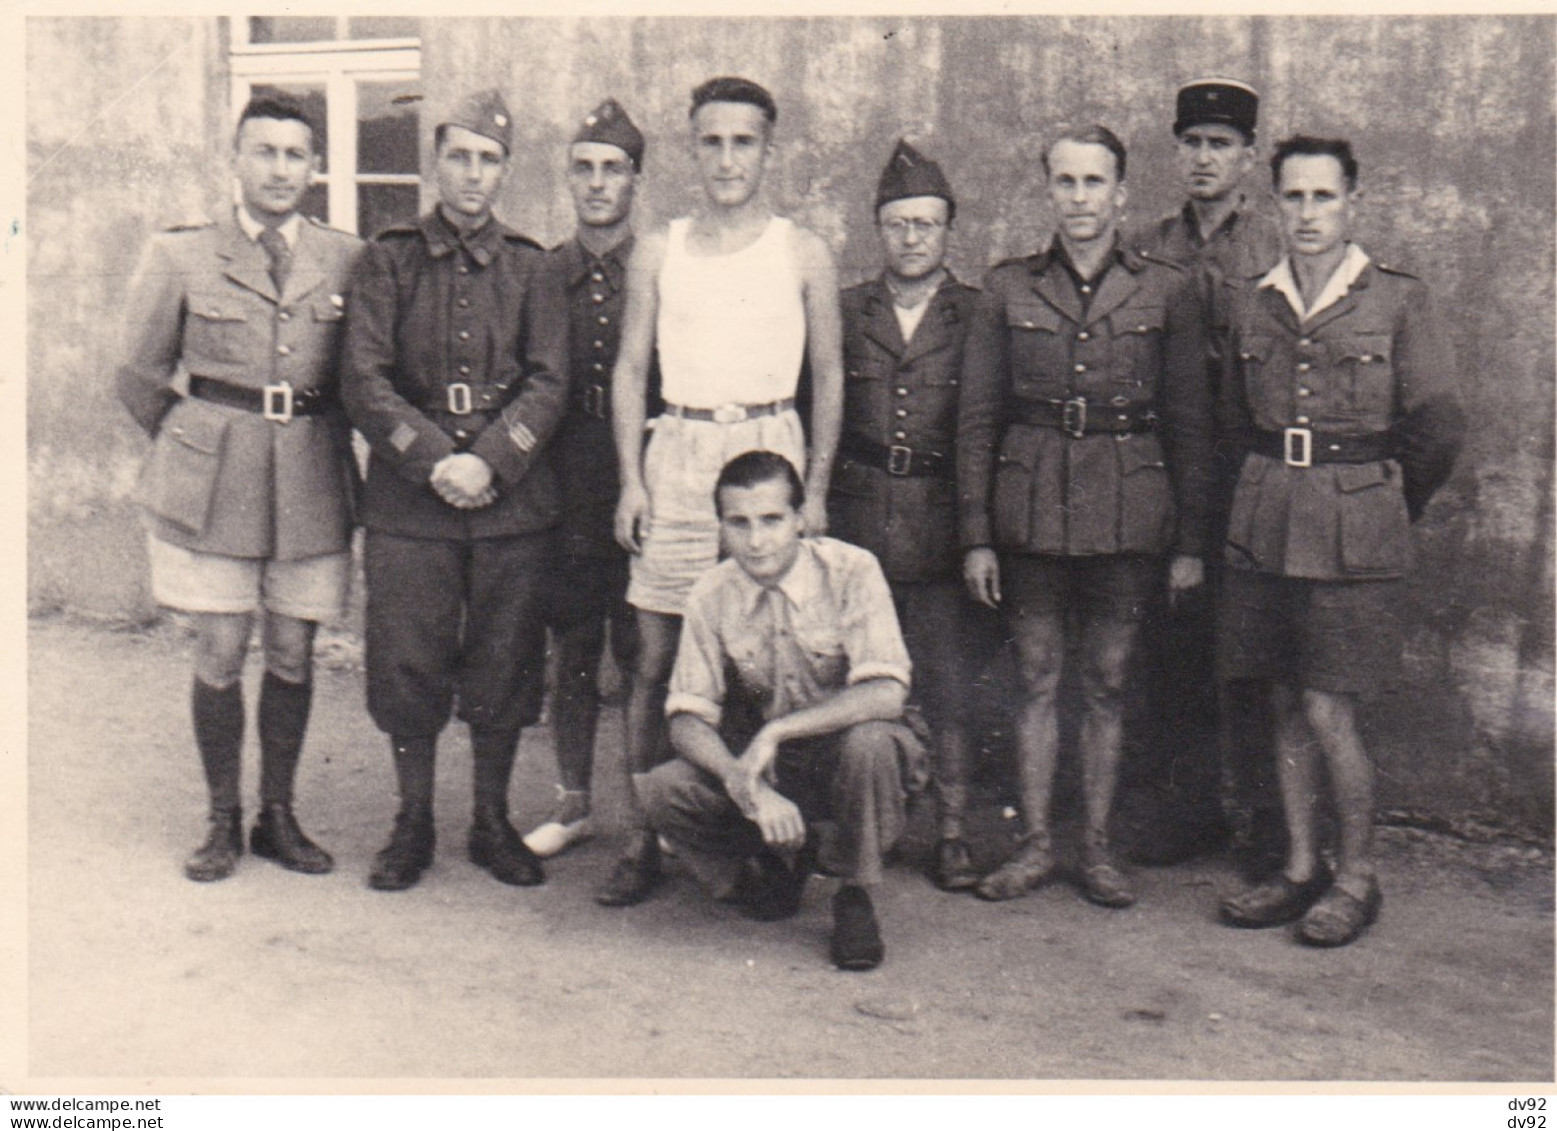 CAMP DE PRISONNIERS POUR OFFICIERS OFF.LAG IVD CAMP D ELSTERHORST PROCHE DE DRESDES (SAXE) 1942 - Guerre, Militaire